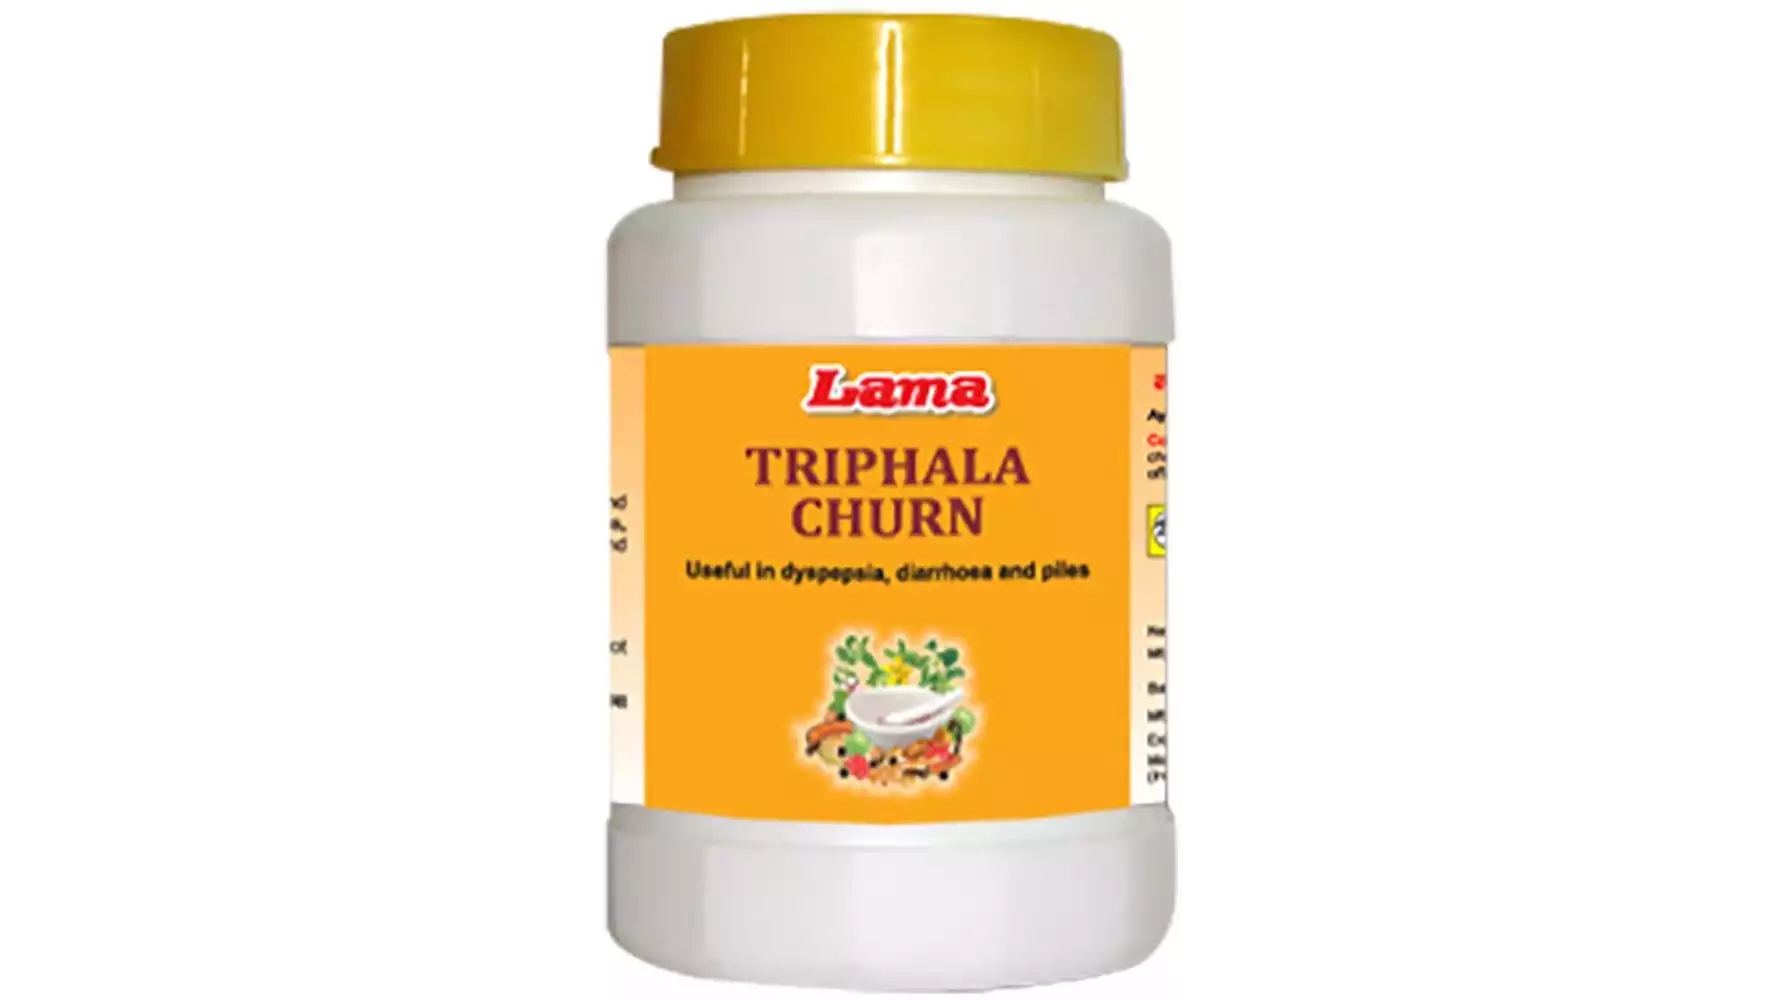 Lama Triphala Churn (200g)